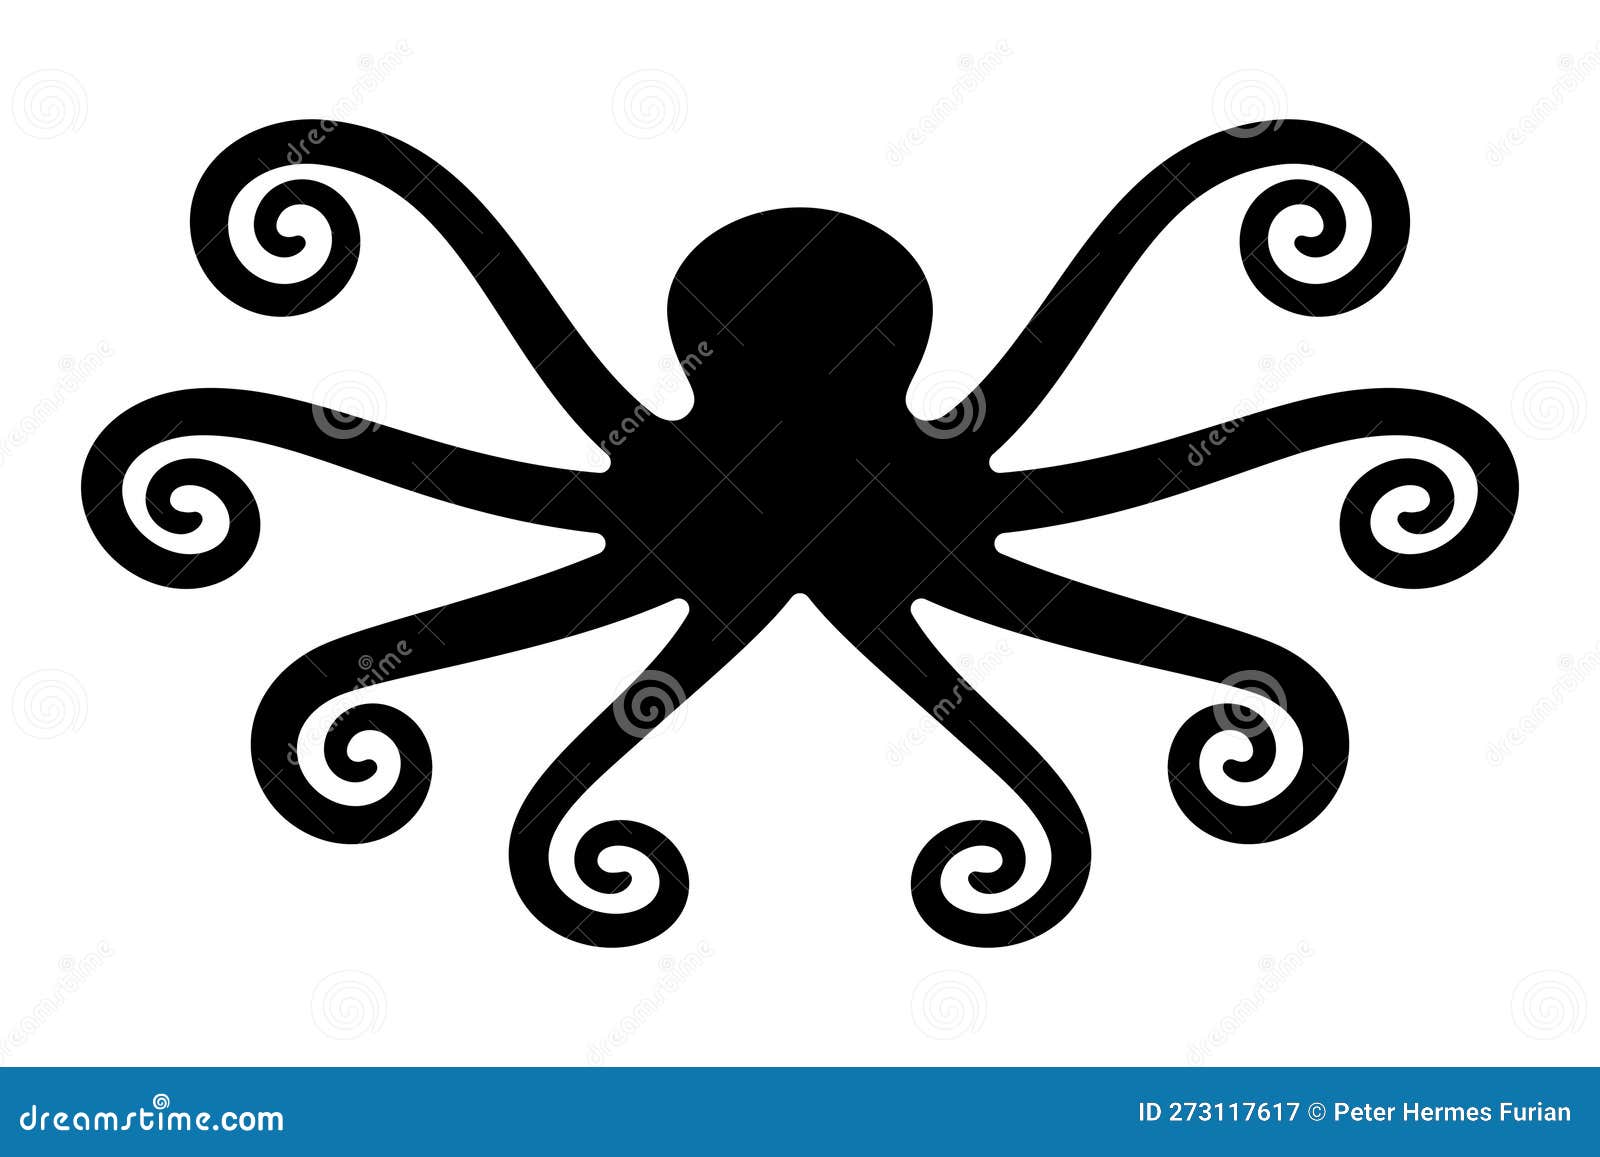 Símbolo Kraken Lendário Monstro Do Mar Ilustração do Vetor